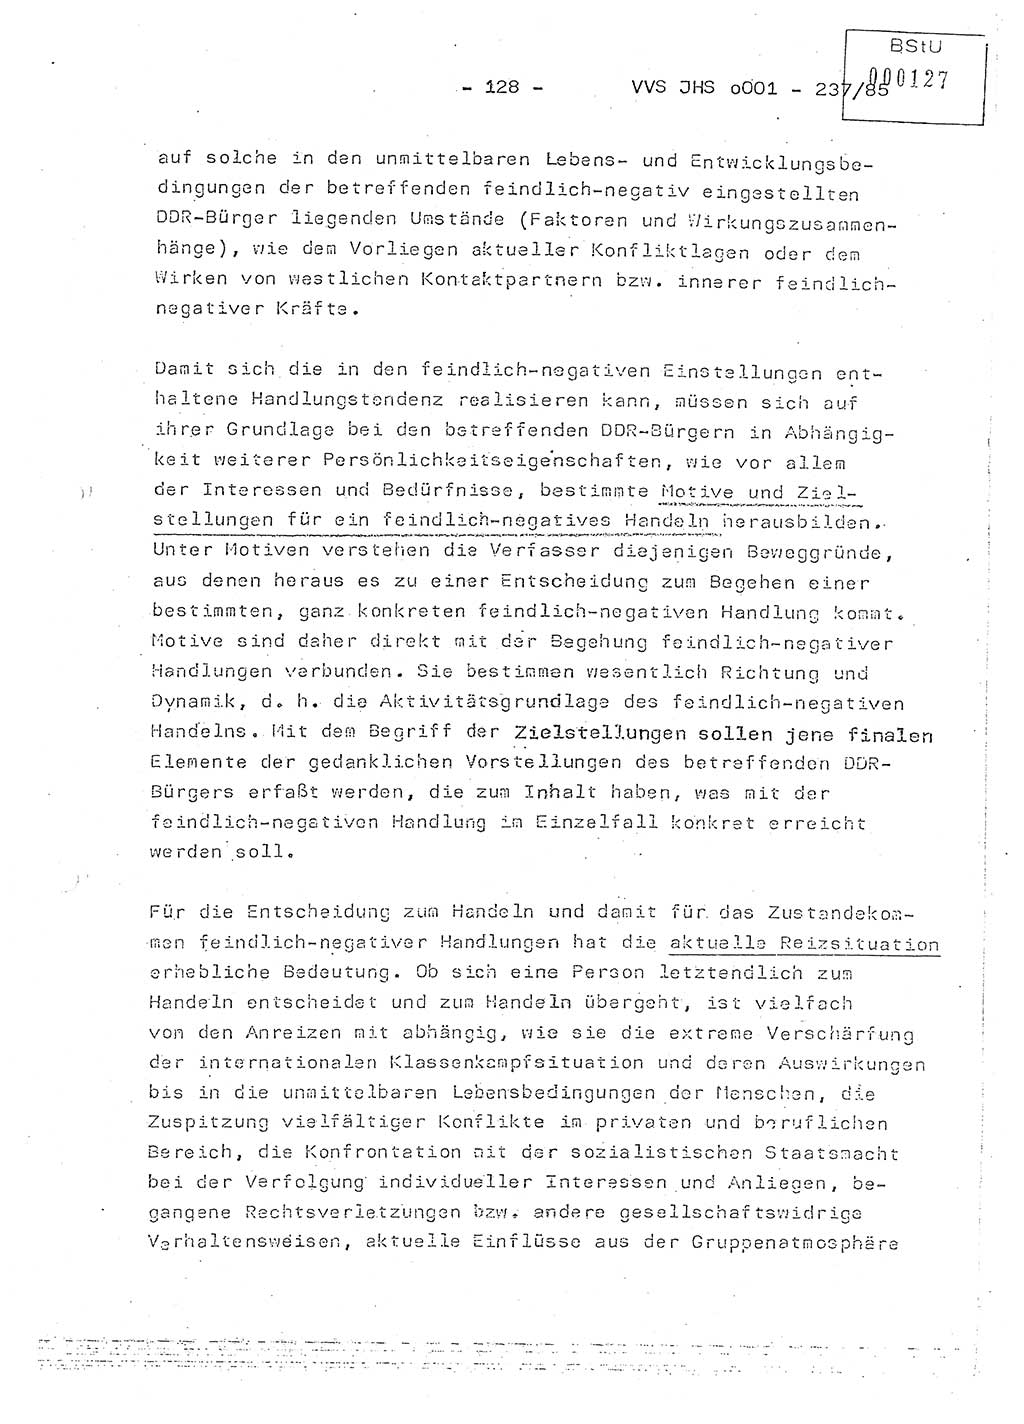 Dissertation Oberstleutnant Peter Jakulski (JHS), Oberstleutnat Christian Rudolph (HA Ⅸ), Major Horst Böttger (ZMD), Major Wolfgang Grüneberg (JHS), Major Albert Meutsch (JHS), Ministerium für Staatssicherheit (MfS) [Deutsche Demokratische Republik (DDR)], Juristische Hochschule (JHS), Vertrauliche Verschlußsache (VVS) o001-237/85, Potsdam 1985, Seite 128 (Diss. MfS DDR JHS VVS o001-237/85 1985, S. 128)